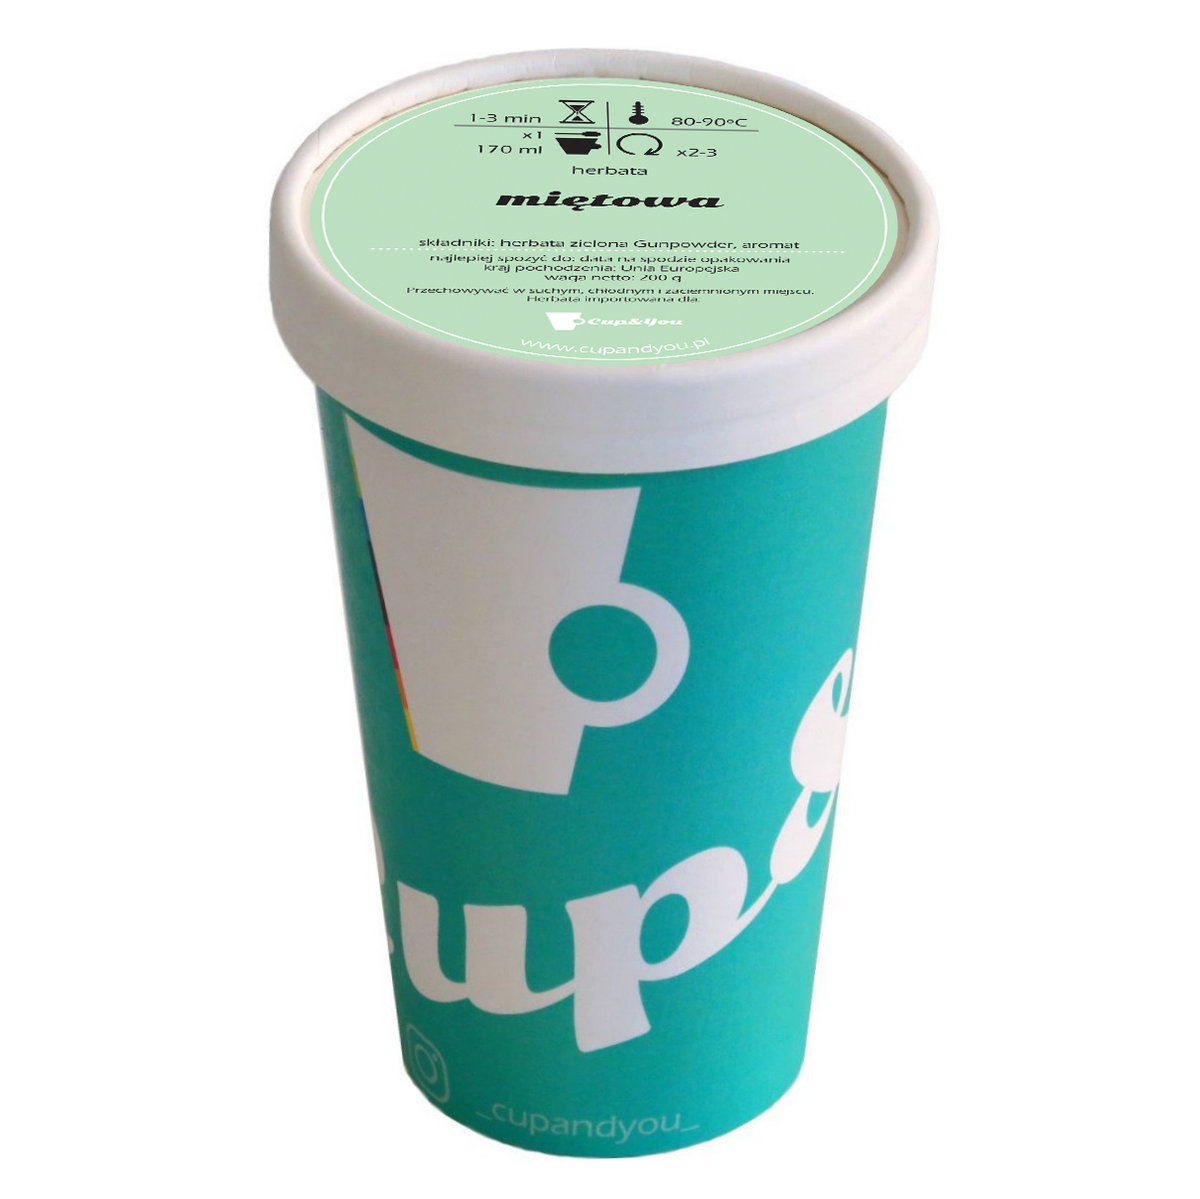 Herbata zielona smakowa CUP&YOU, miętowa w EKO KUBKU, 200 g